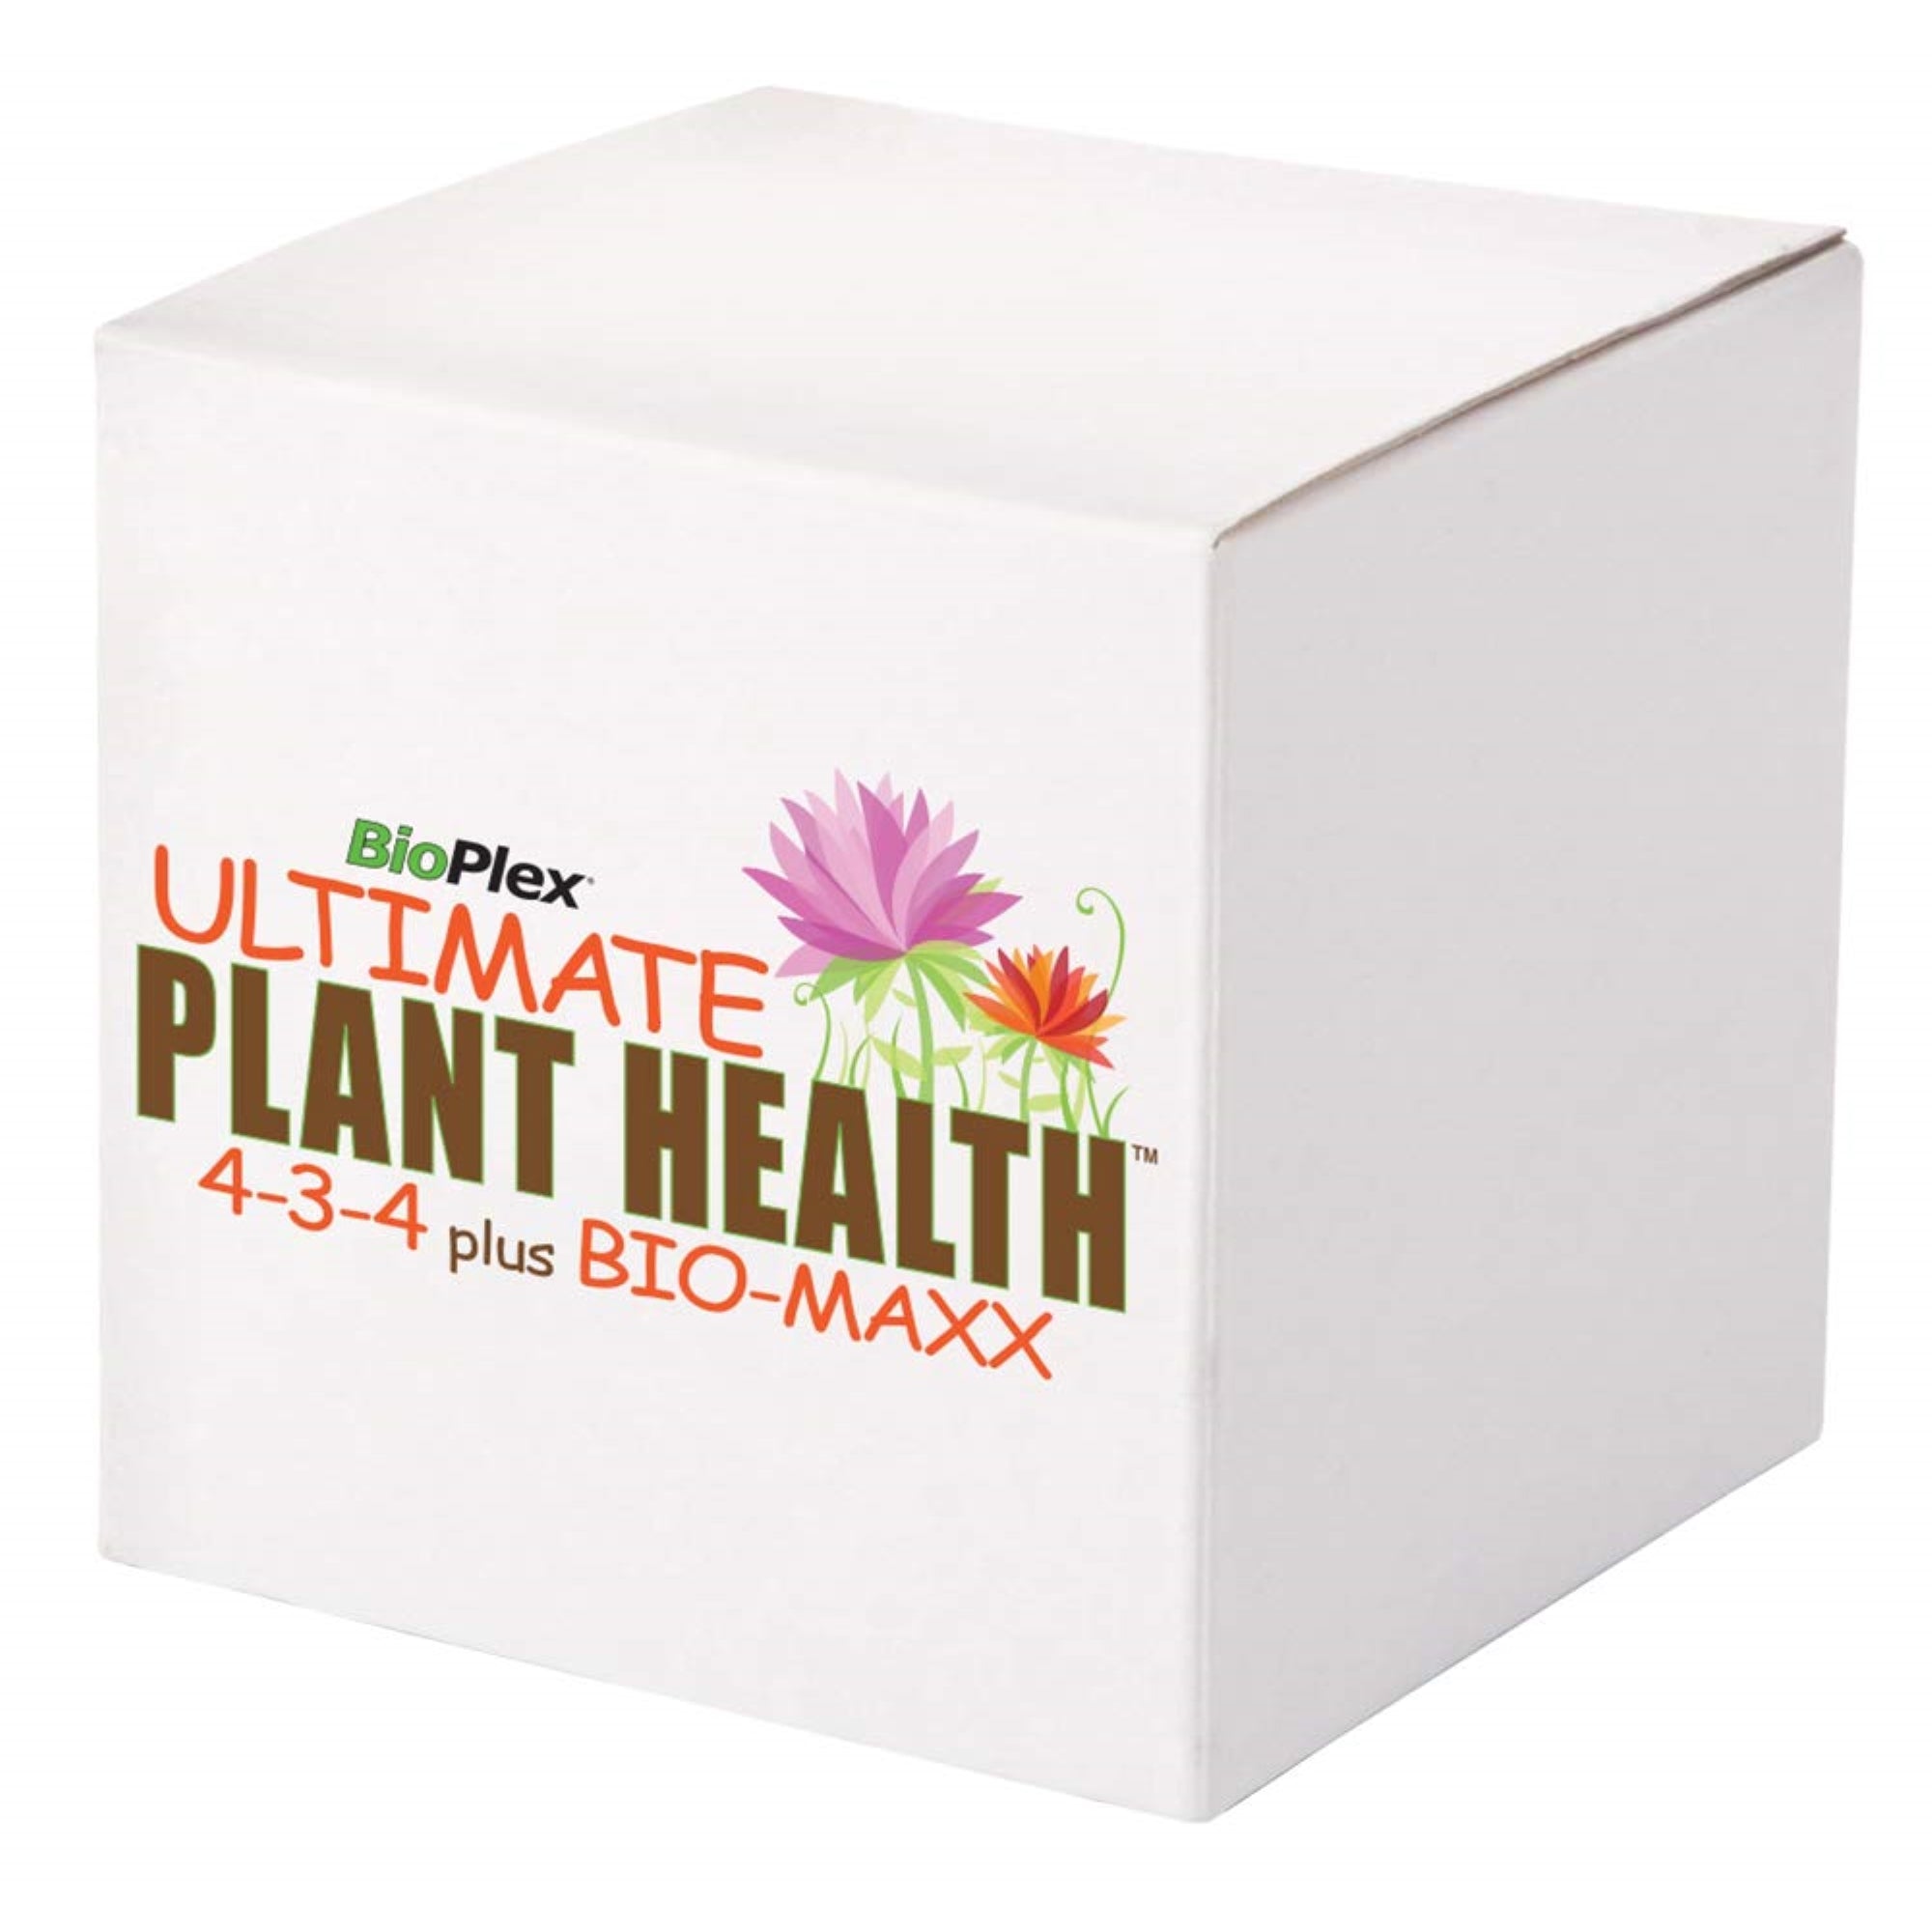 BioPlex Ultimate Plant Health 4-3-4 + Bio-Maxx Tablets, 15G (750 tablets)